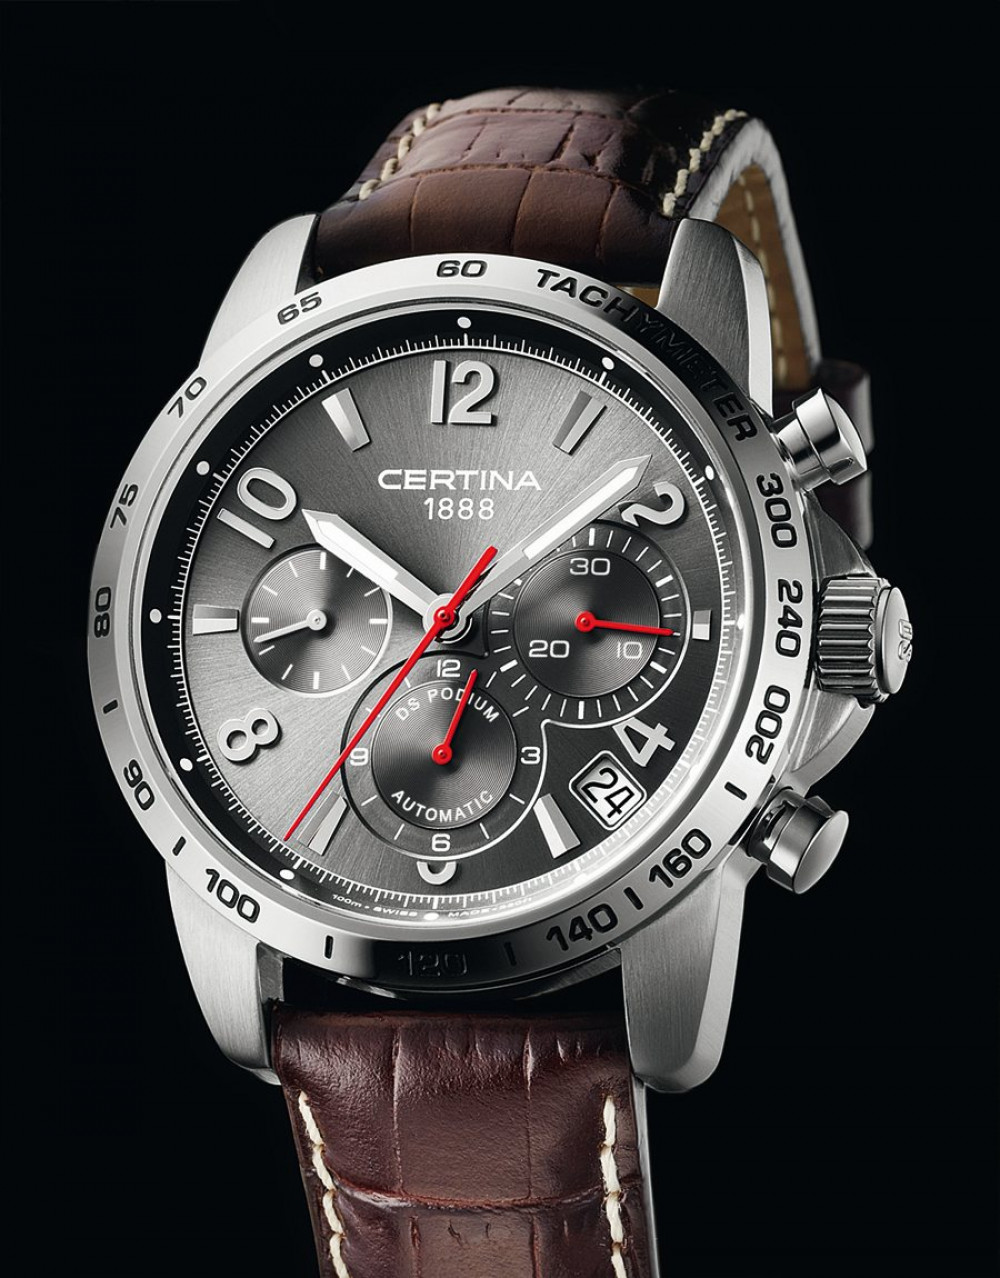 Zegarek firmy Certina, model DS Podium Valgranges